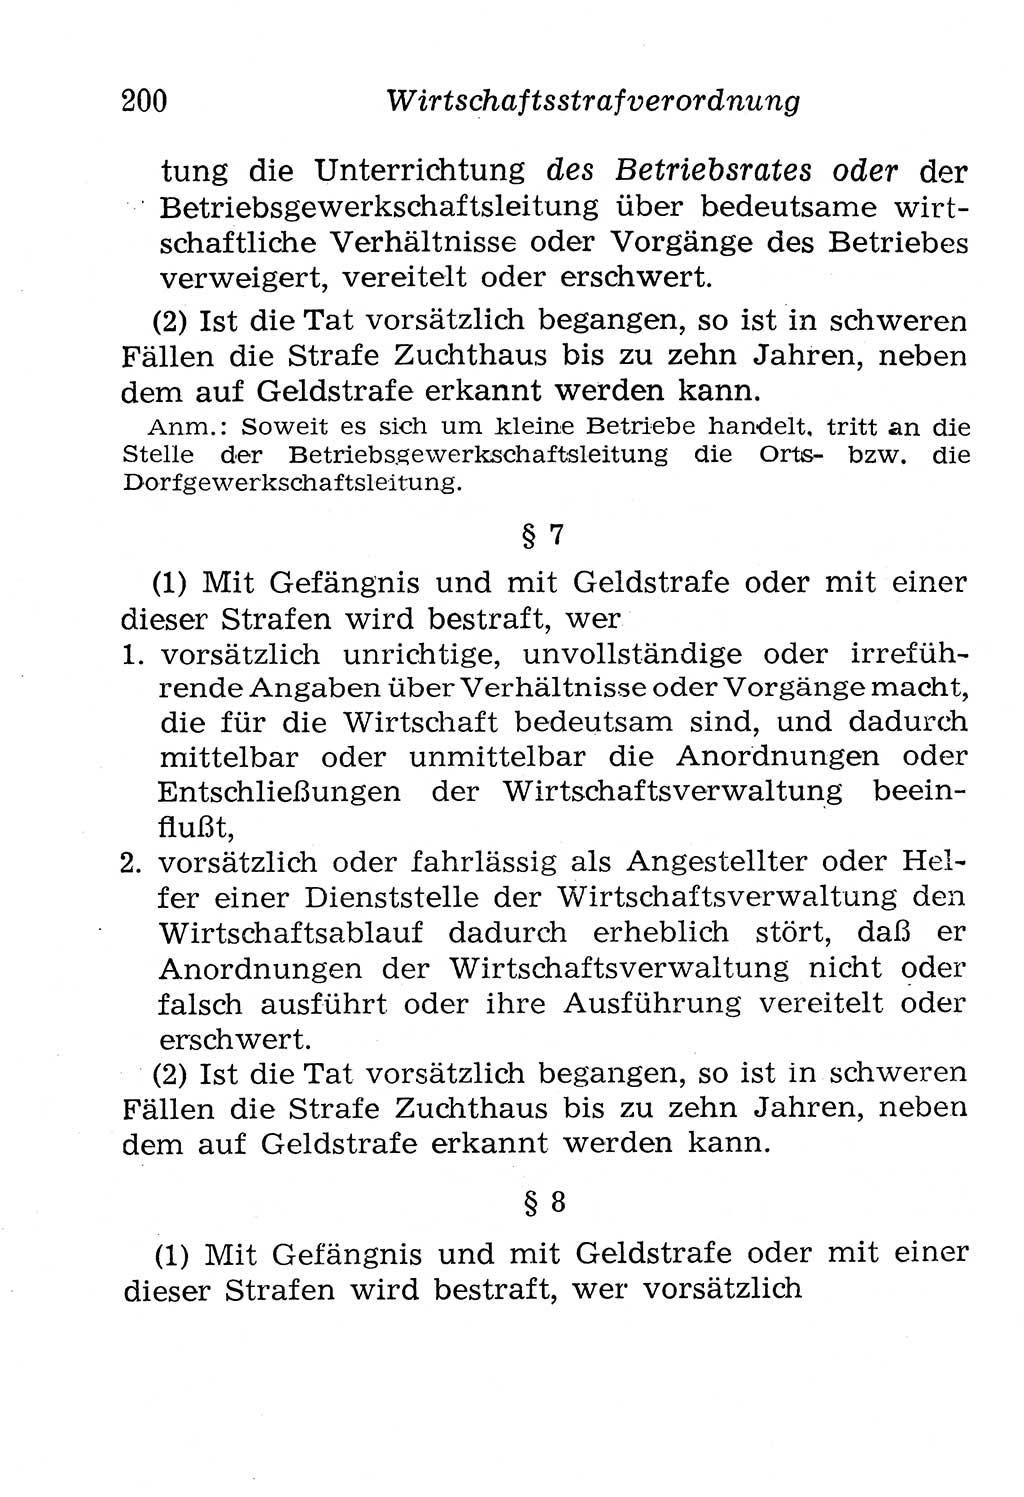 Strafgesetzbuch (StGB) und andere Strafgesetze [Deutsche Demokratische Republik (DDR)] 1958, Seite 200 (StGB Strafges. DDR 1958, S. 200)